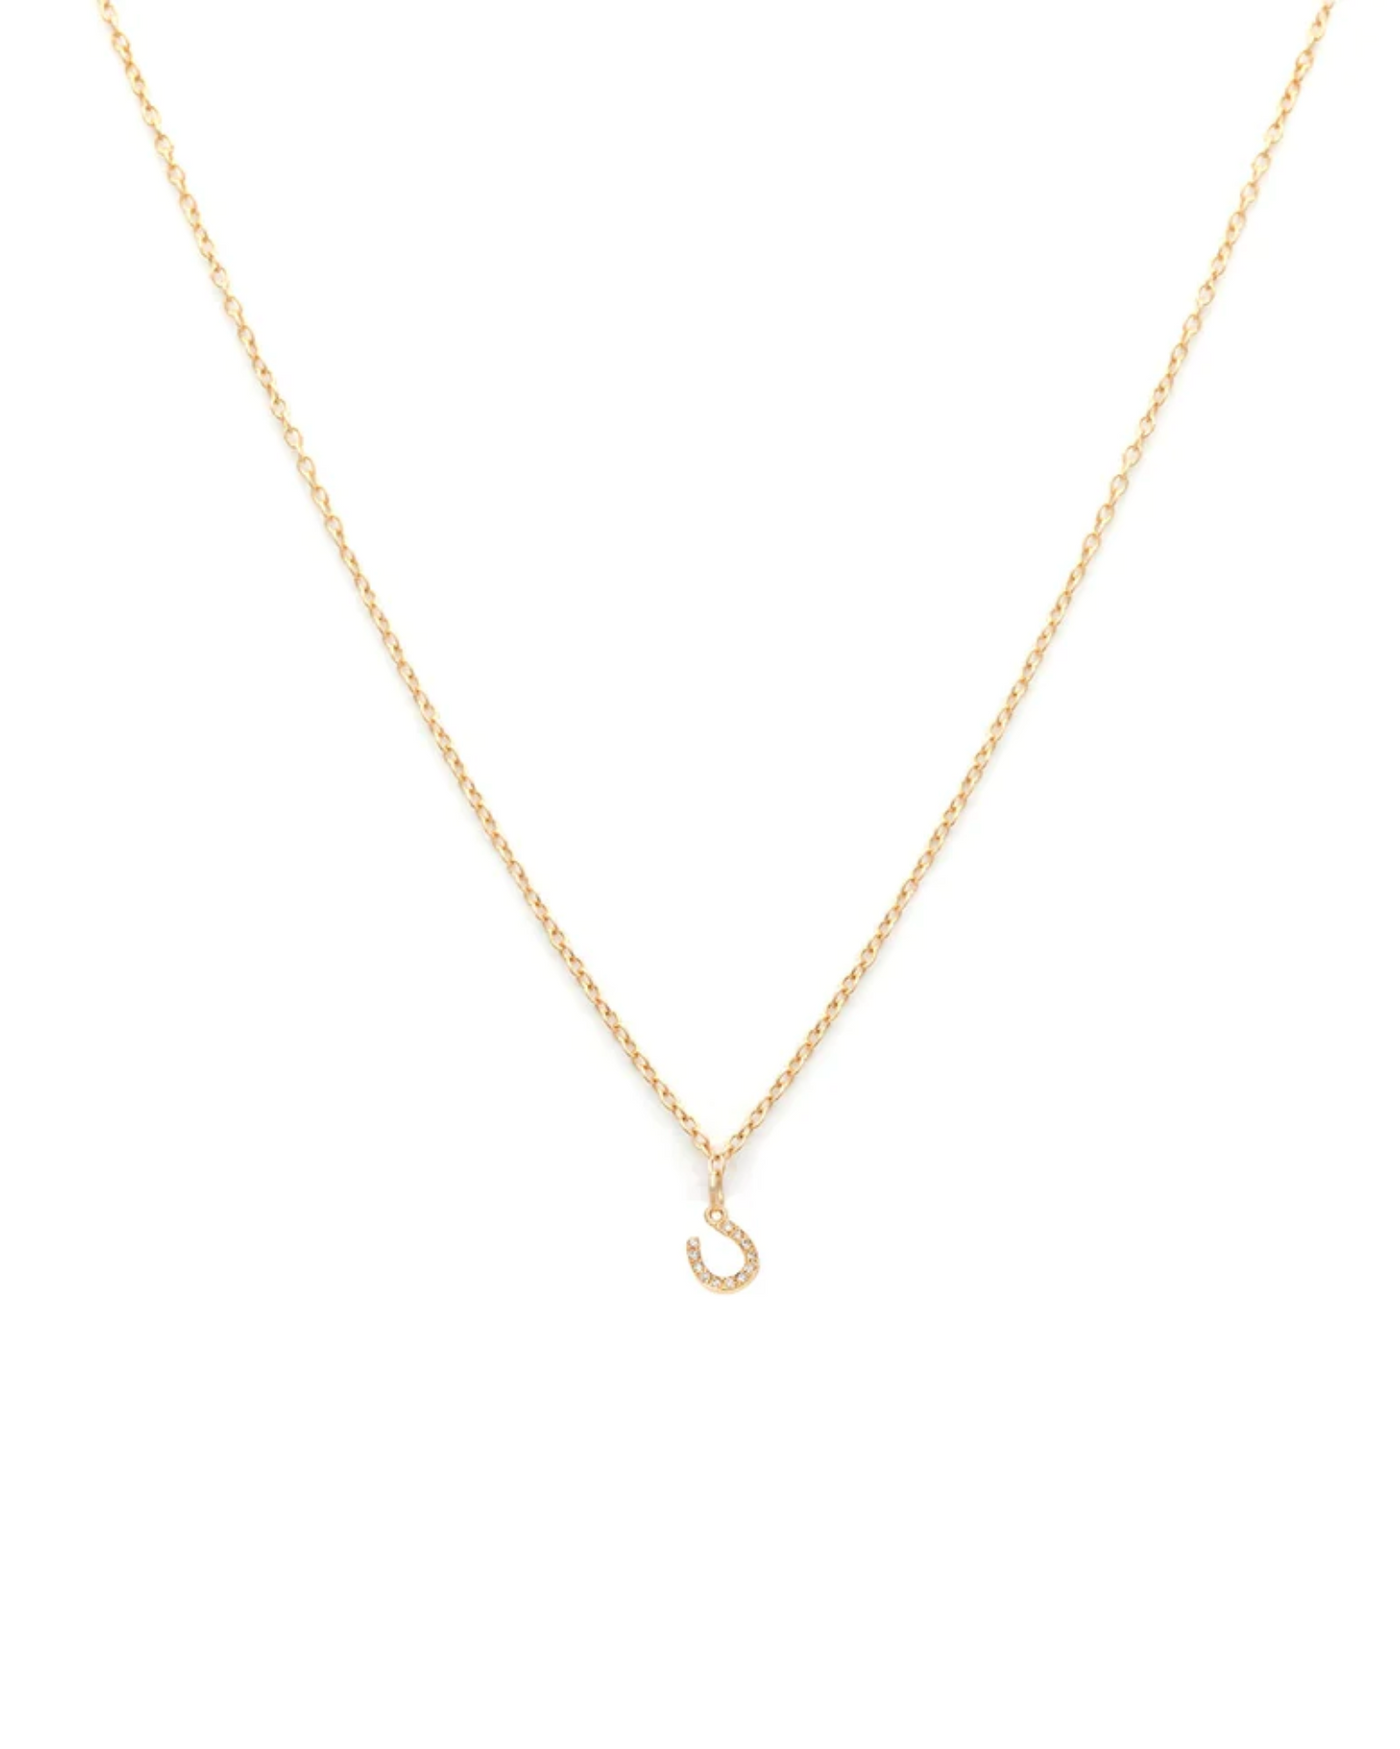 Horseshoe Necklace | 14K Gold